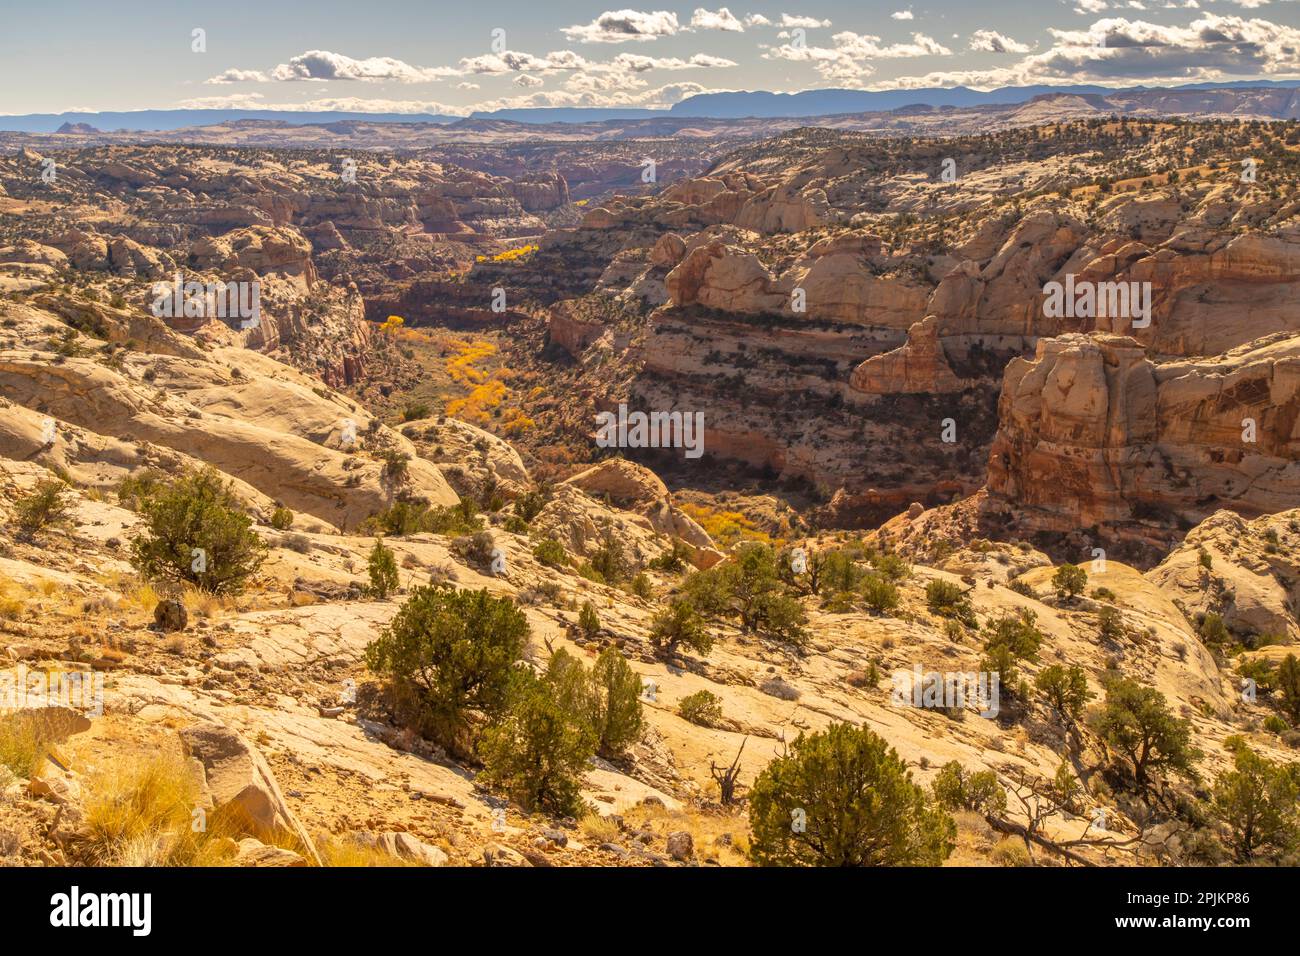 États-Unis, Utah, Grand Staircase Escalante National Monument. Vue d'ensemble des falaises et des arbres de coton d'automne. Banque D'Images